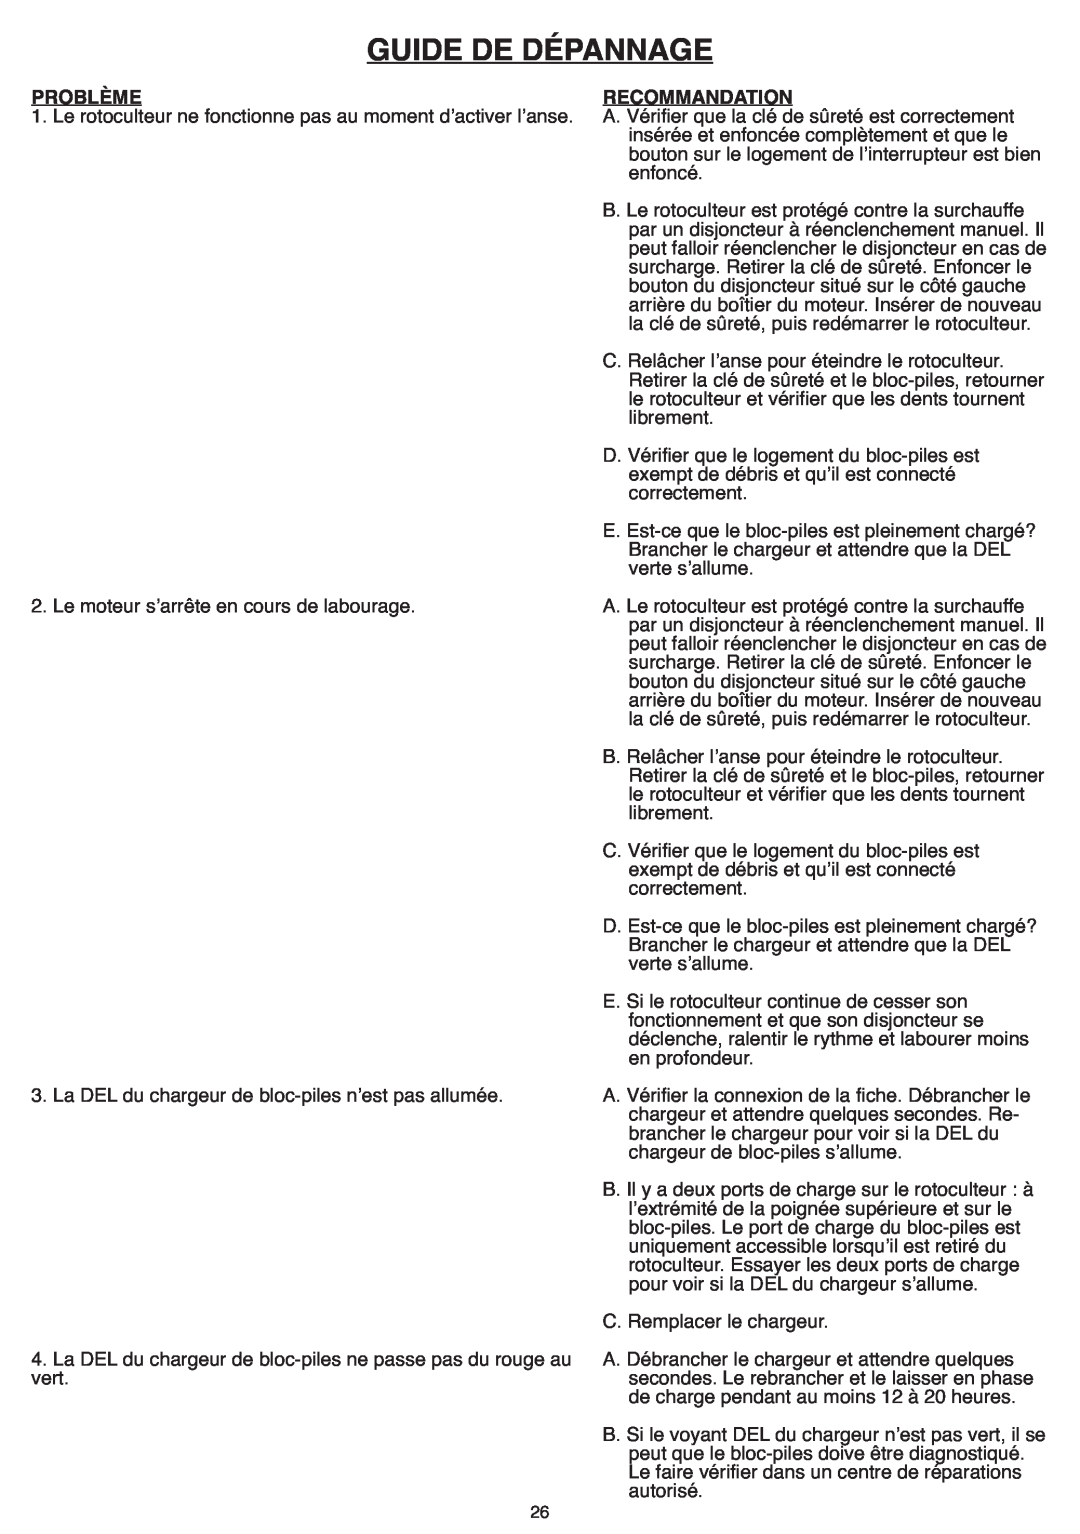 Black & Decker CTL36 instruction manual Guide De Dépannage, Problème, Recommandation 